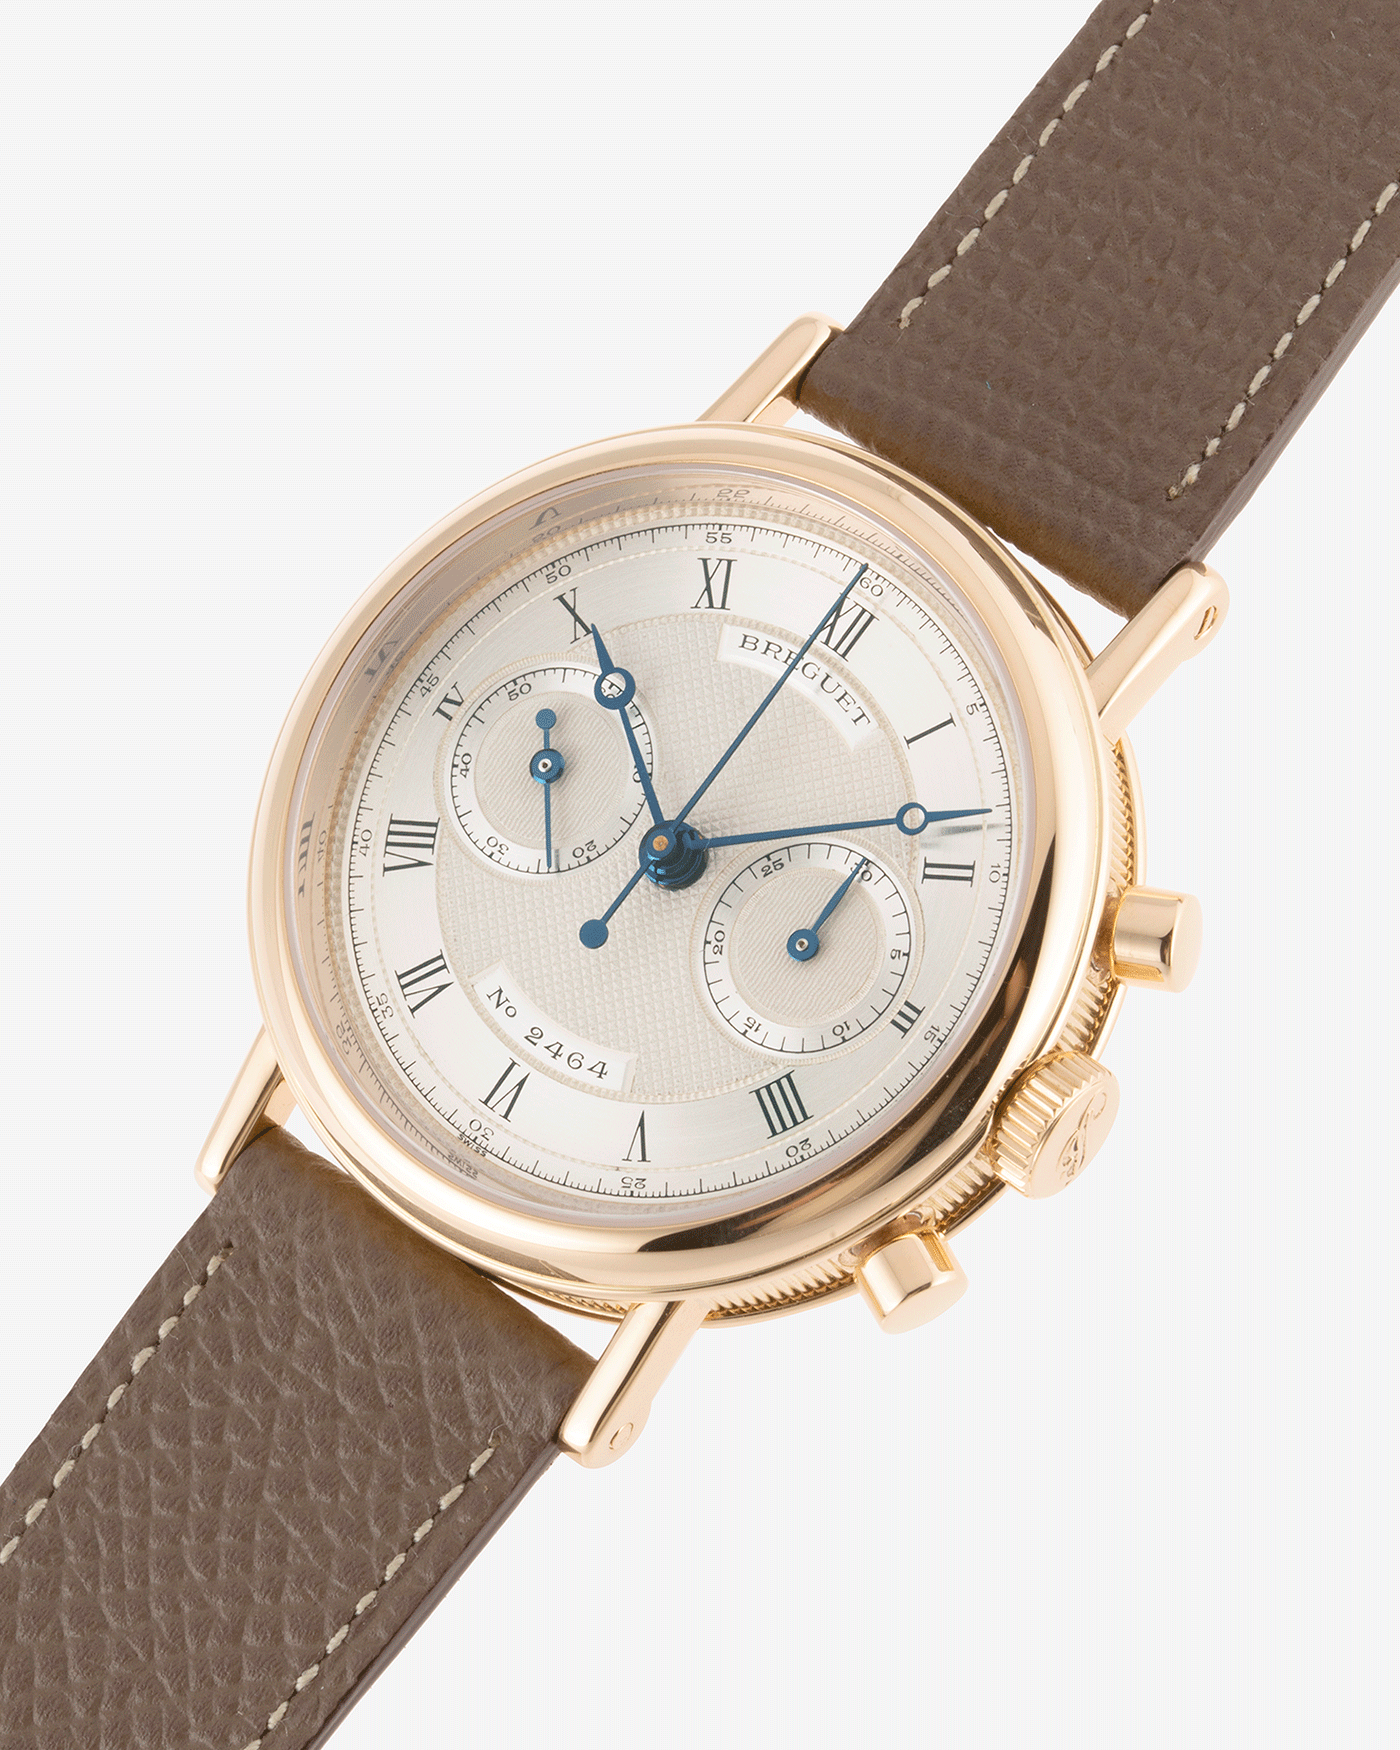 Breguet Chronograph Classique 3237 Lemania Watch | S.Song Vintage Timepieces 